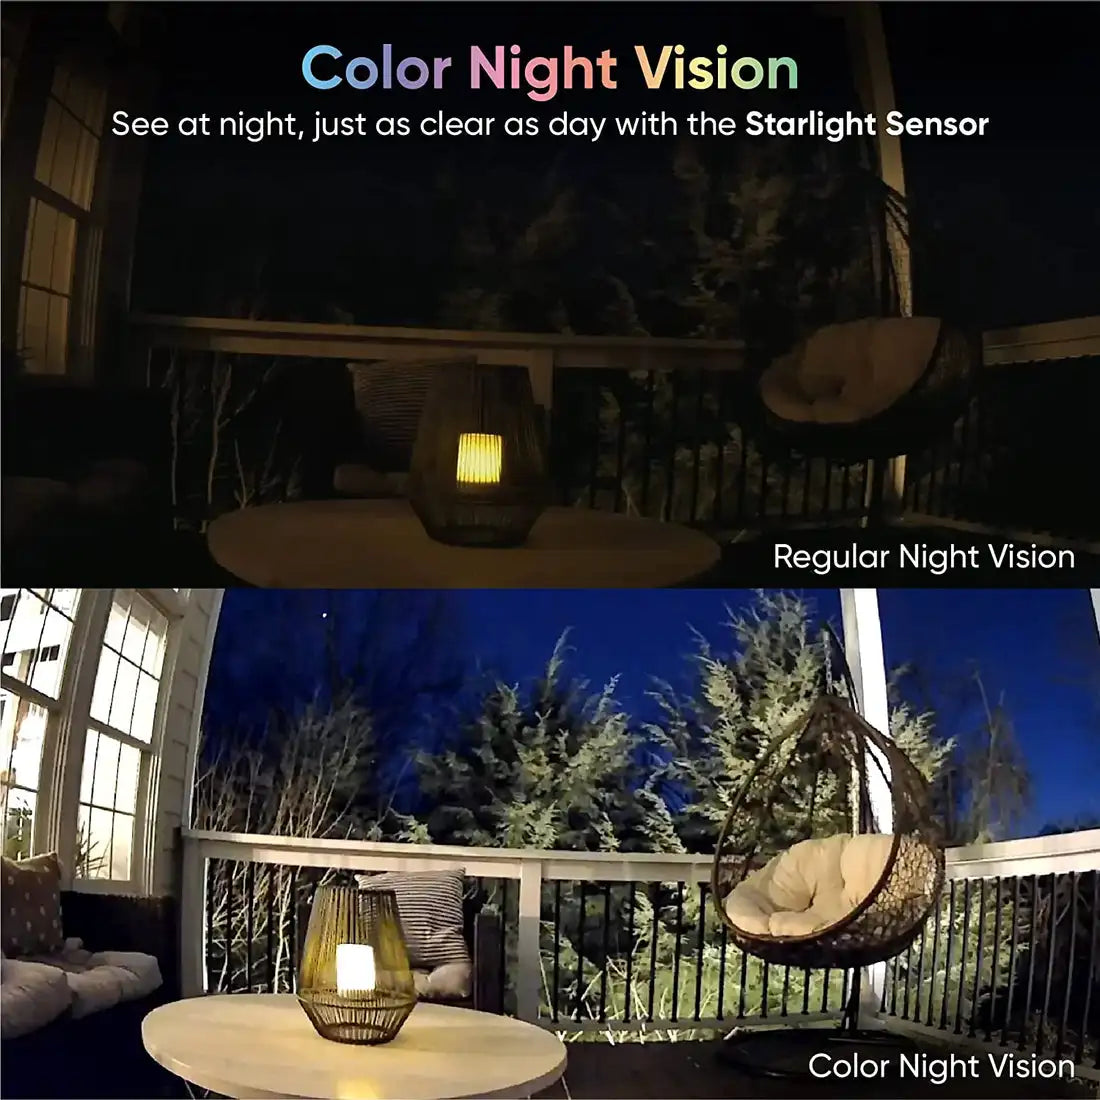 Wyze-cámara v3 con visión nocturna a Color, videocámara inalámbrica 1080p HD para interiores y exteriores, funciona con Alexa y asistente de Google